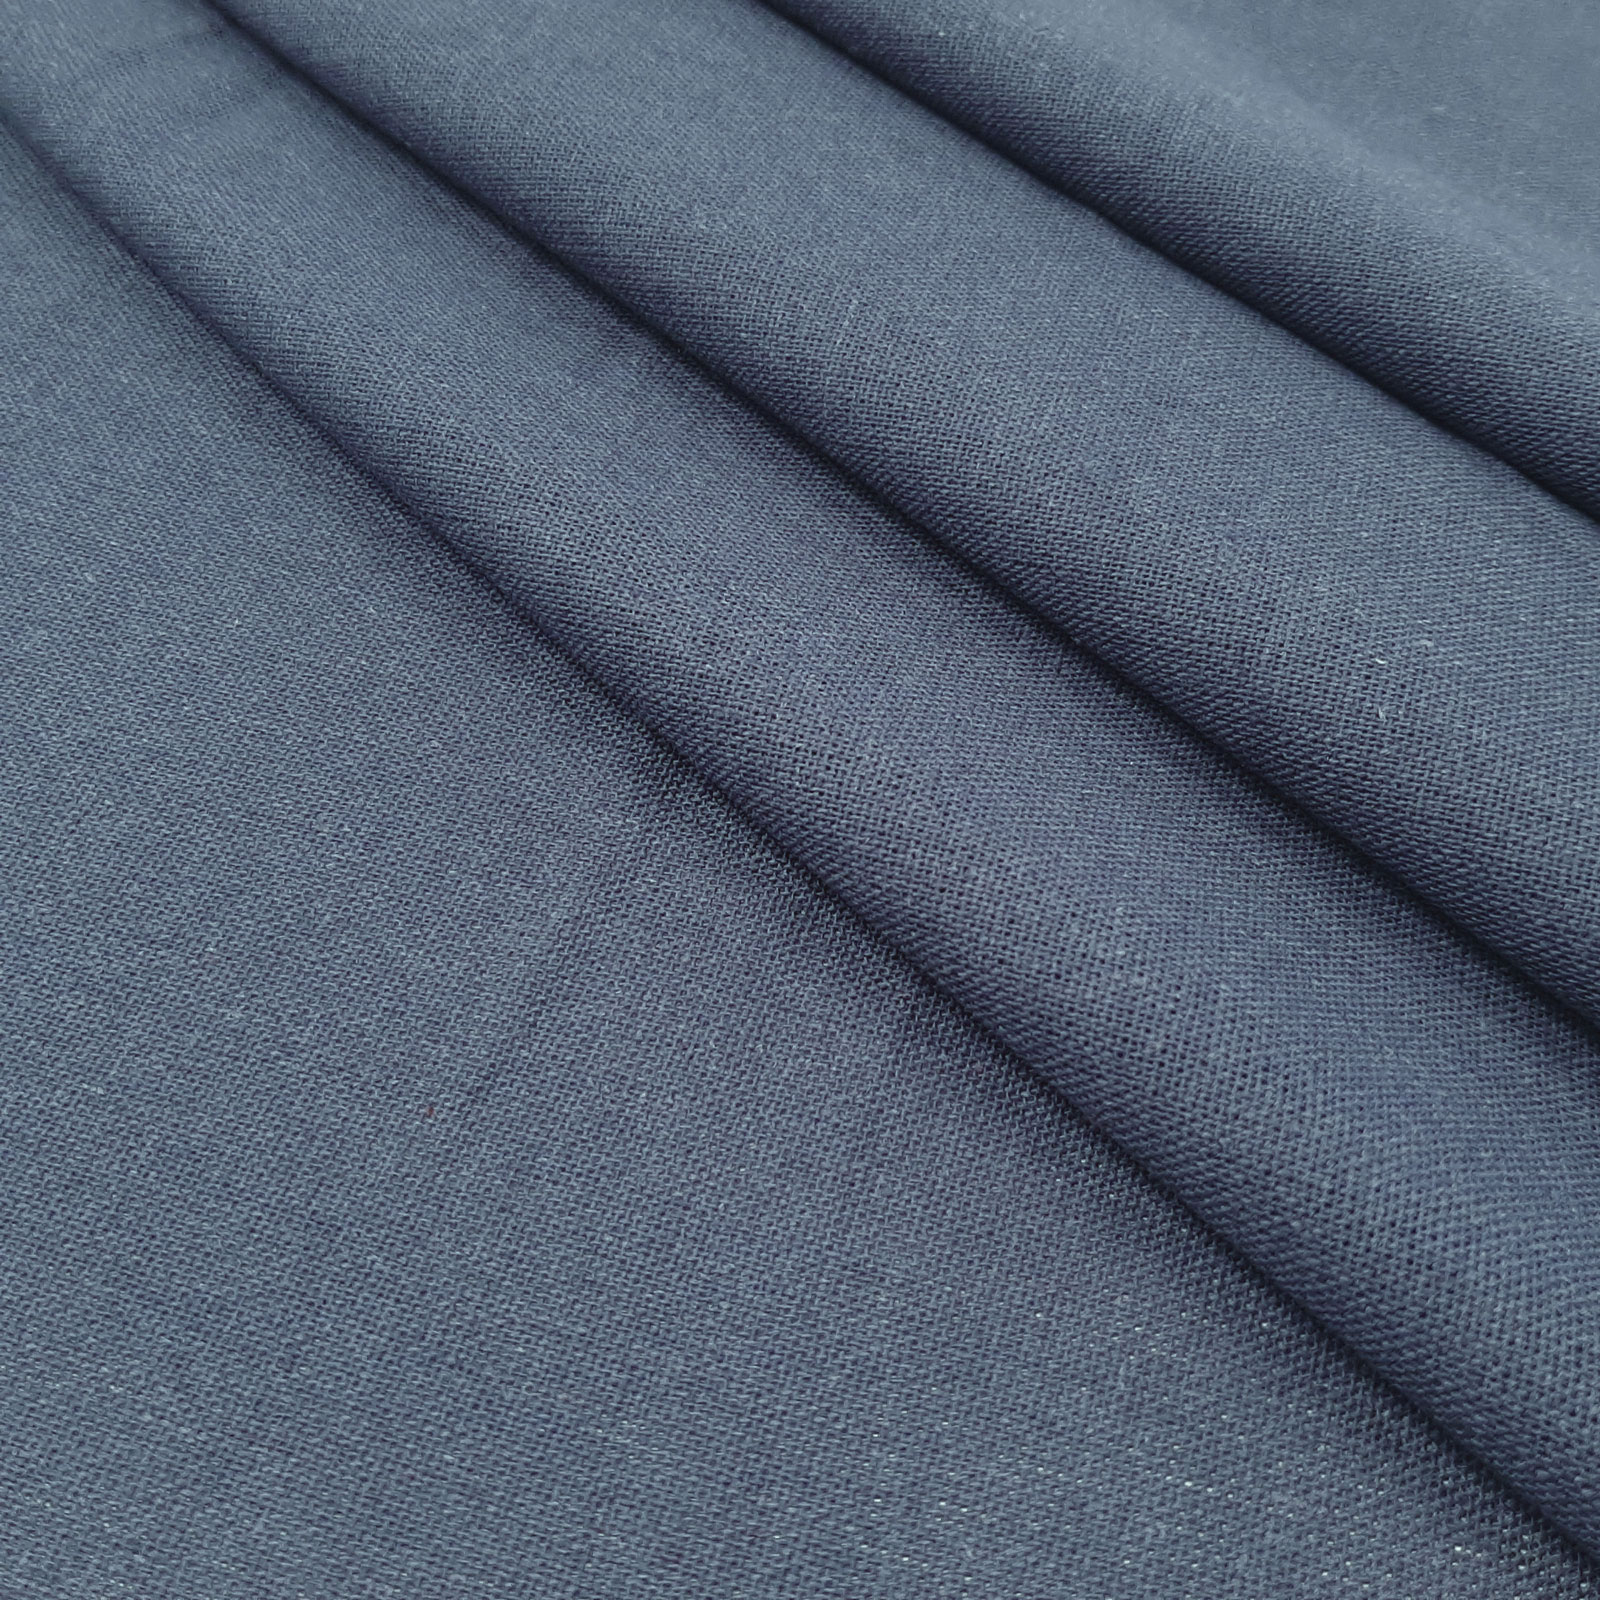 Bella - tela de algodón de lino natural - Azul Ahumado